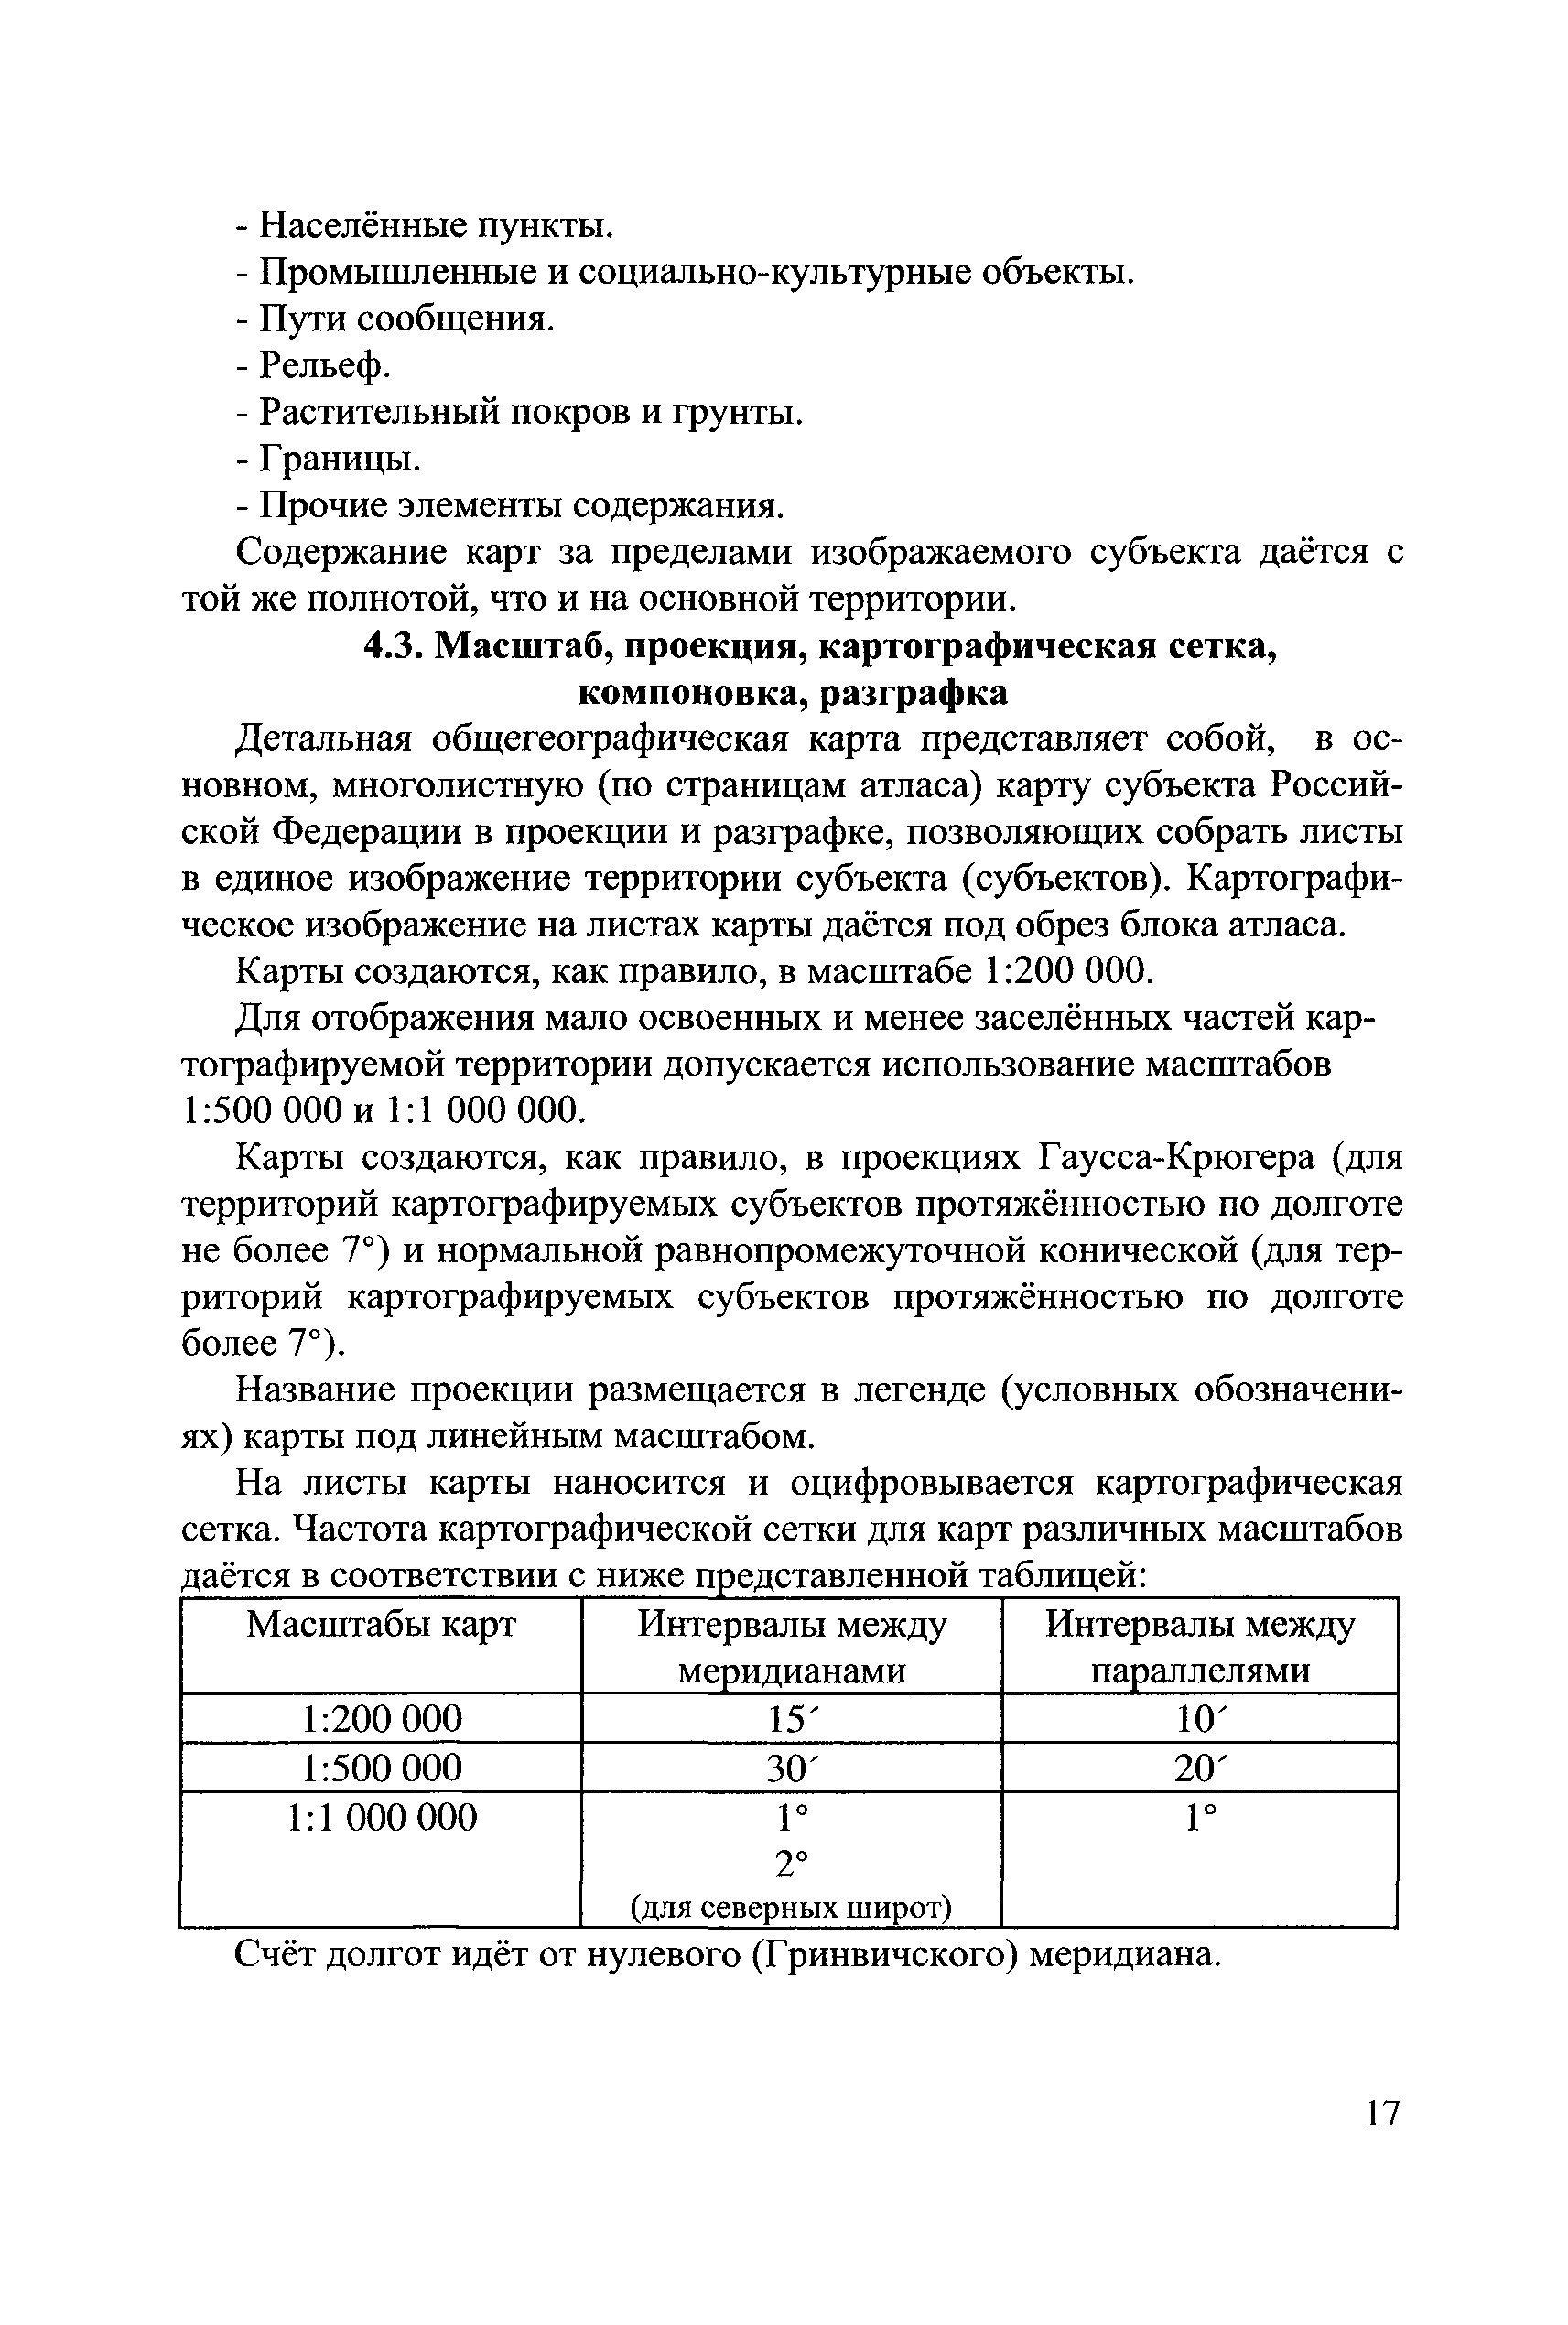 ГКИНП (ОНТА) 14-254-01